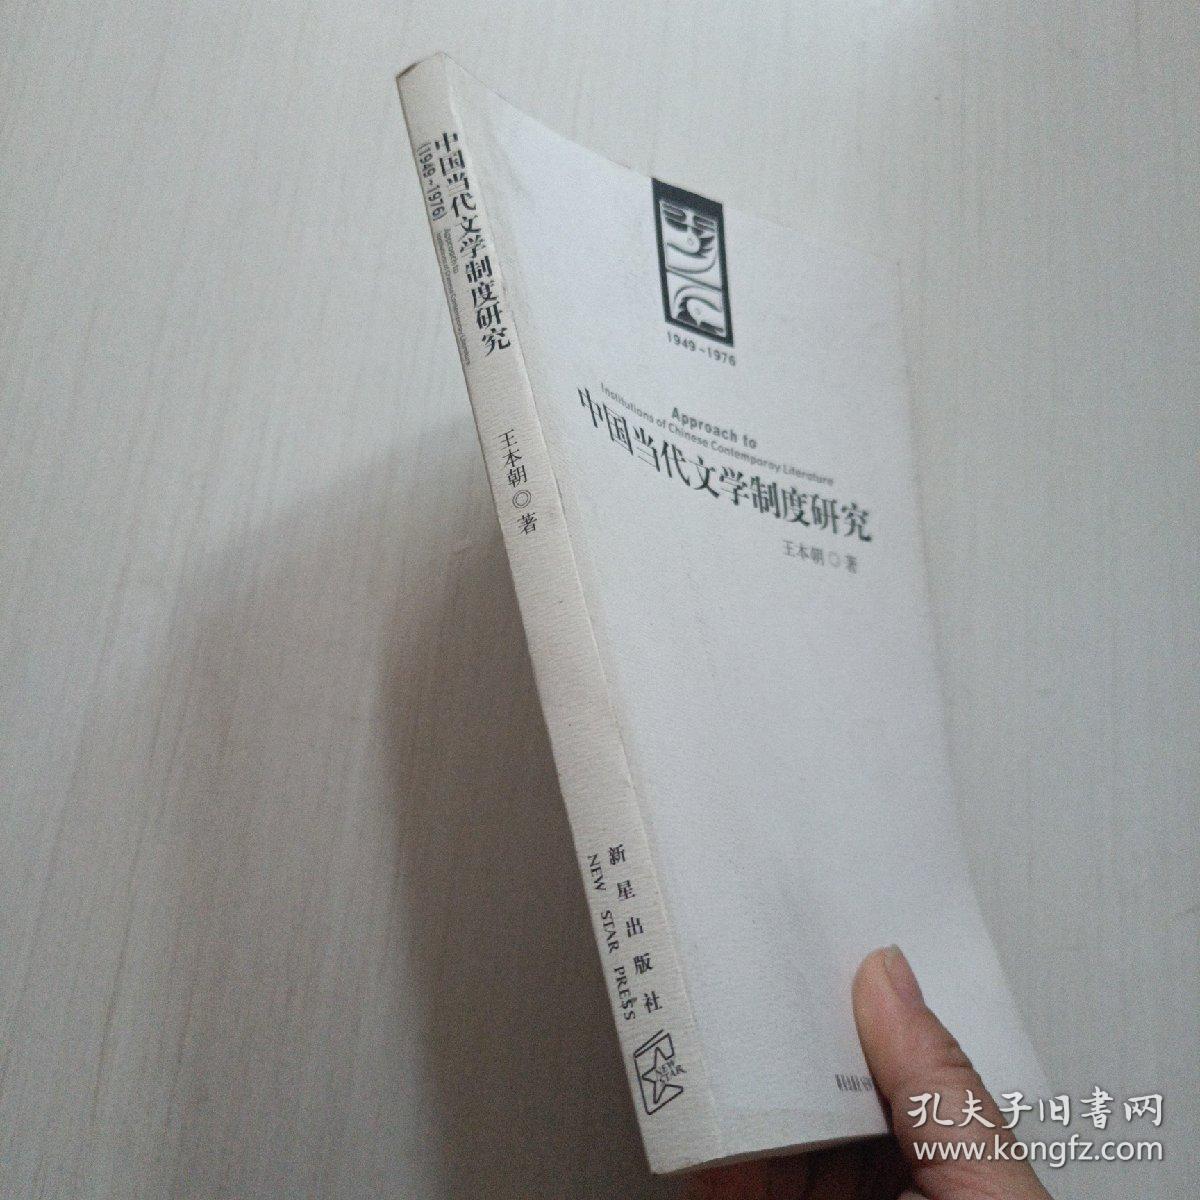 中国当代文学制度研究:1949-1976